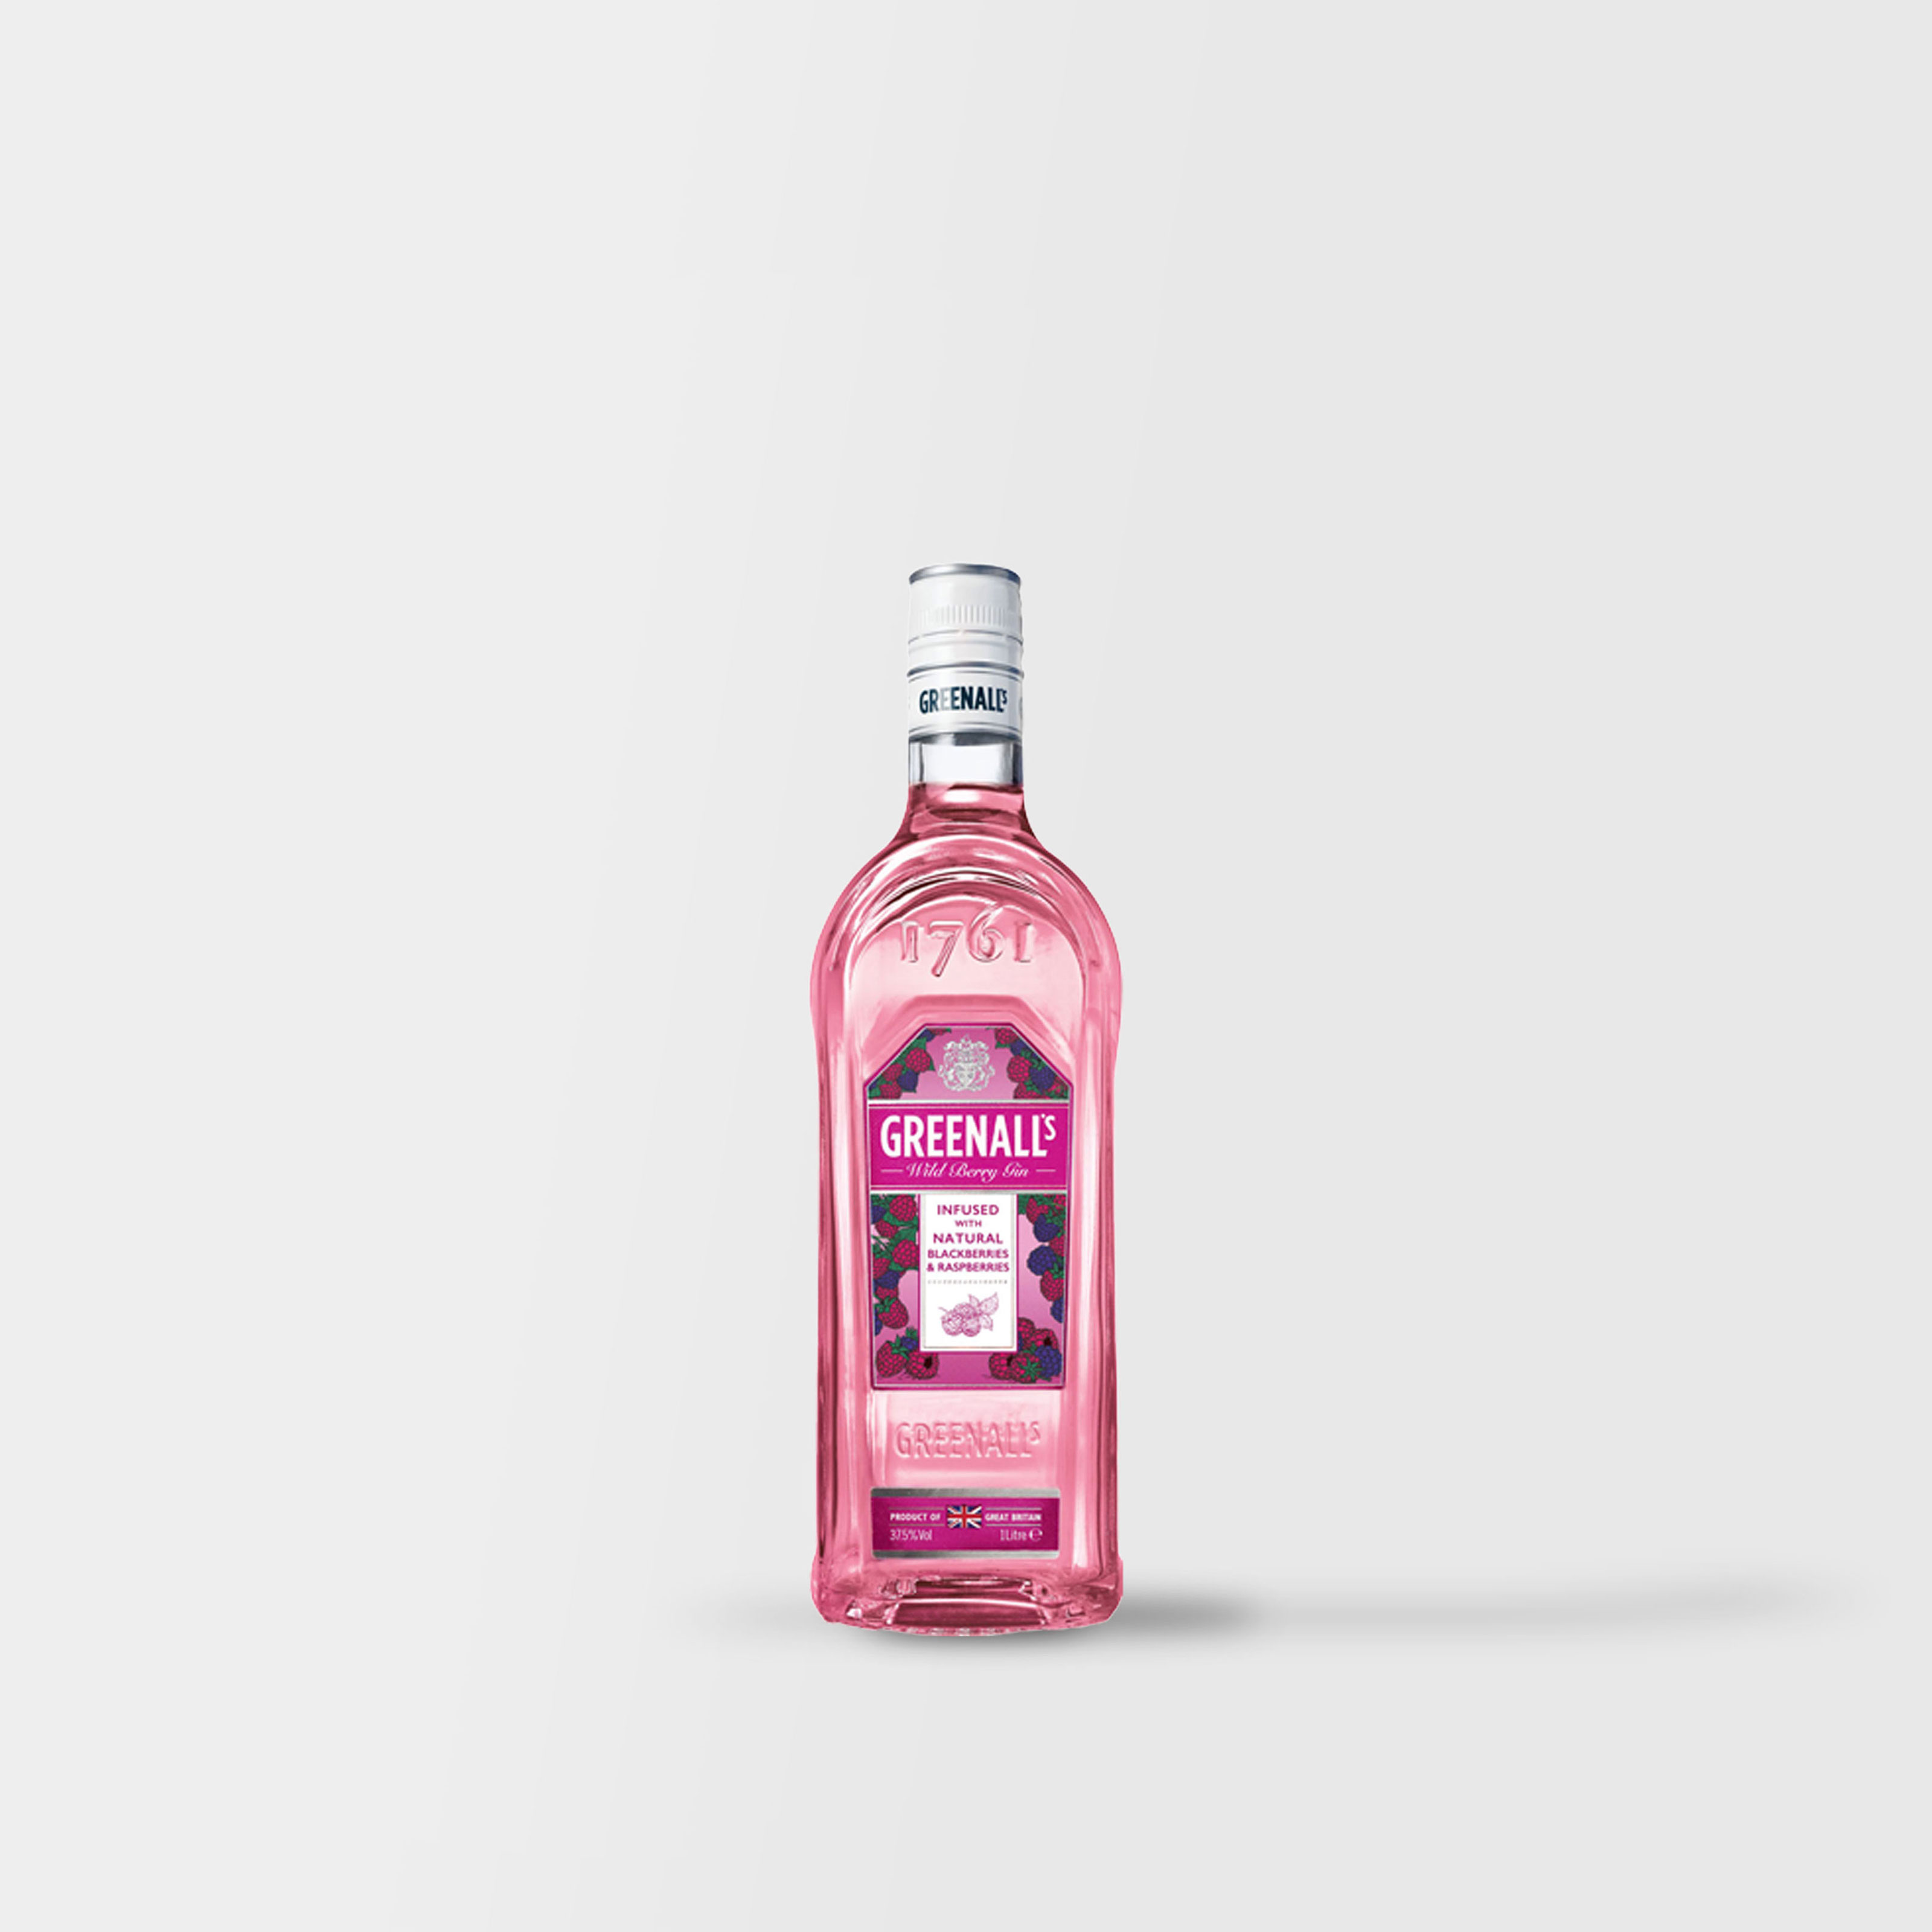 Wild Berry Pink Gin - Greenalls GinGreenalls Gin